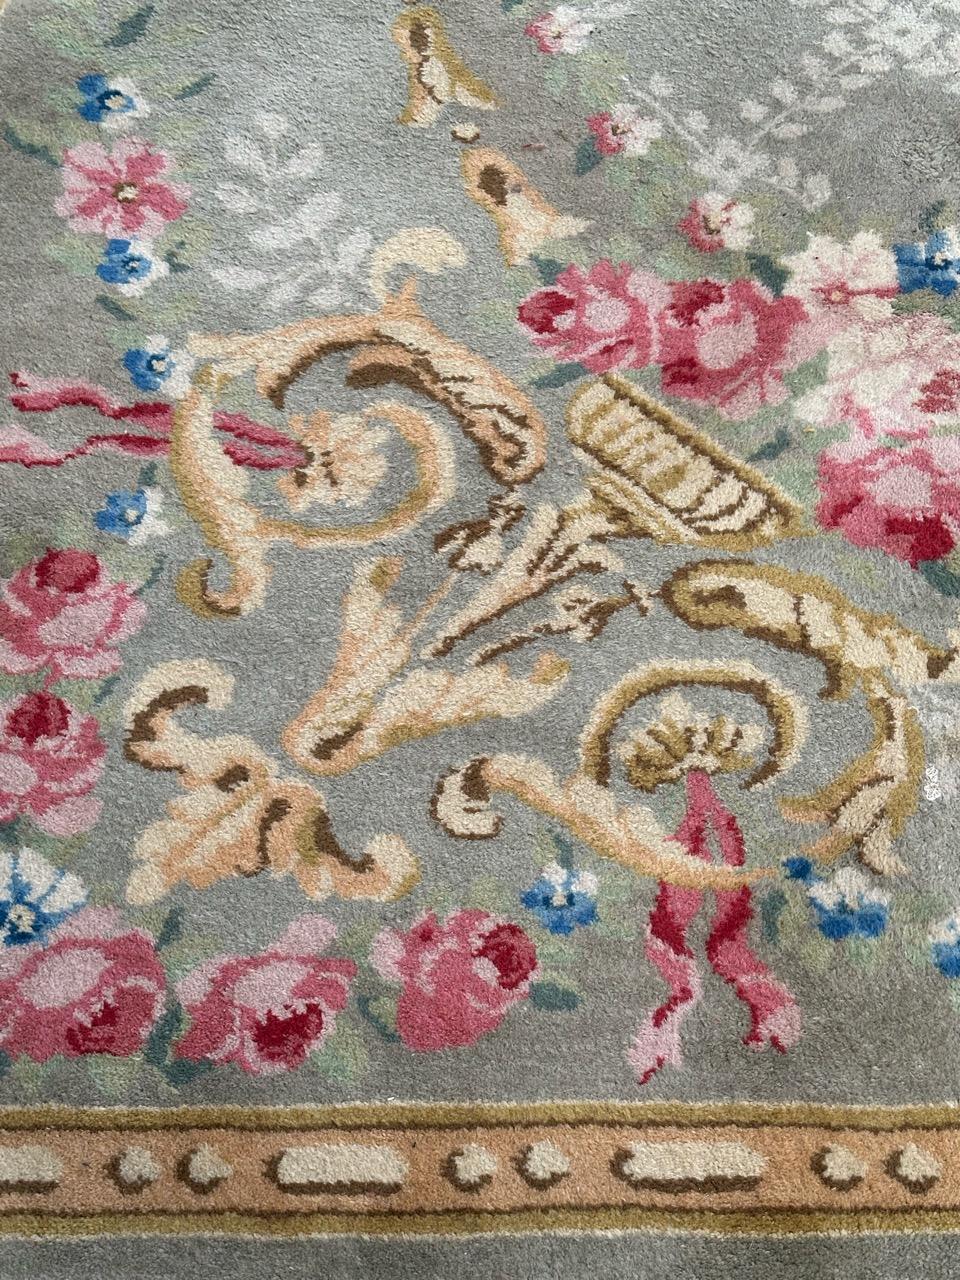 Joli tapis d'Aubusson français du milieu du 20e siècle avec un très beau design floral et de belles couleurs avec un fond vert clair, rose, jaune, vert, bleu, marron et blanc, entièrement et finement noué à la main avec de la laine sur une base de